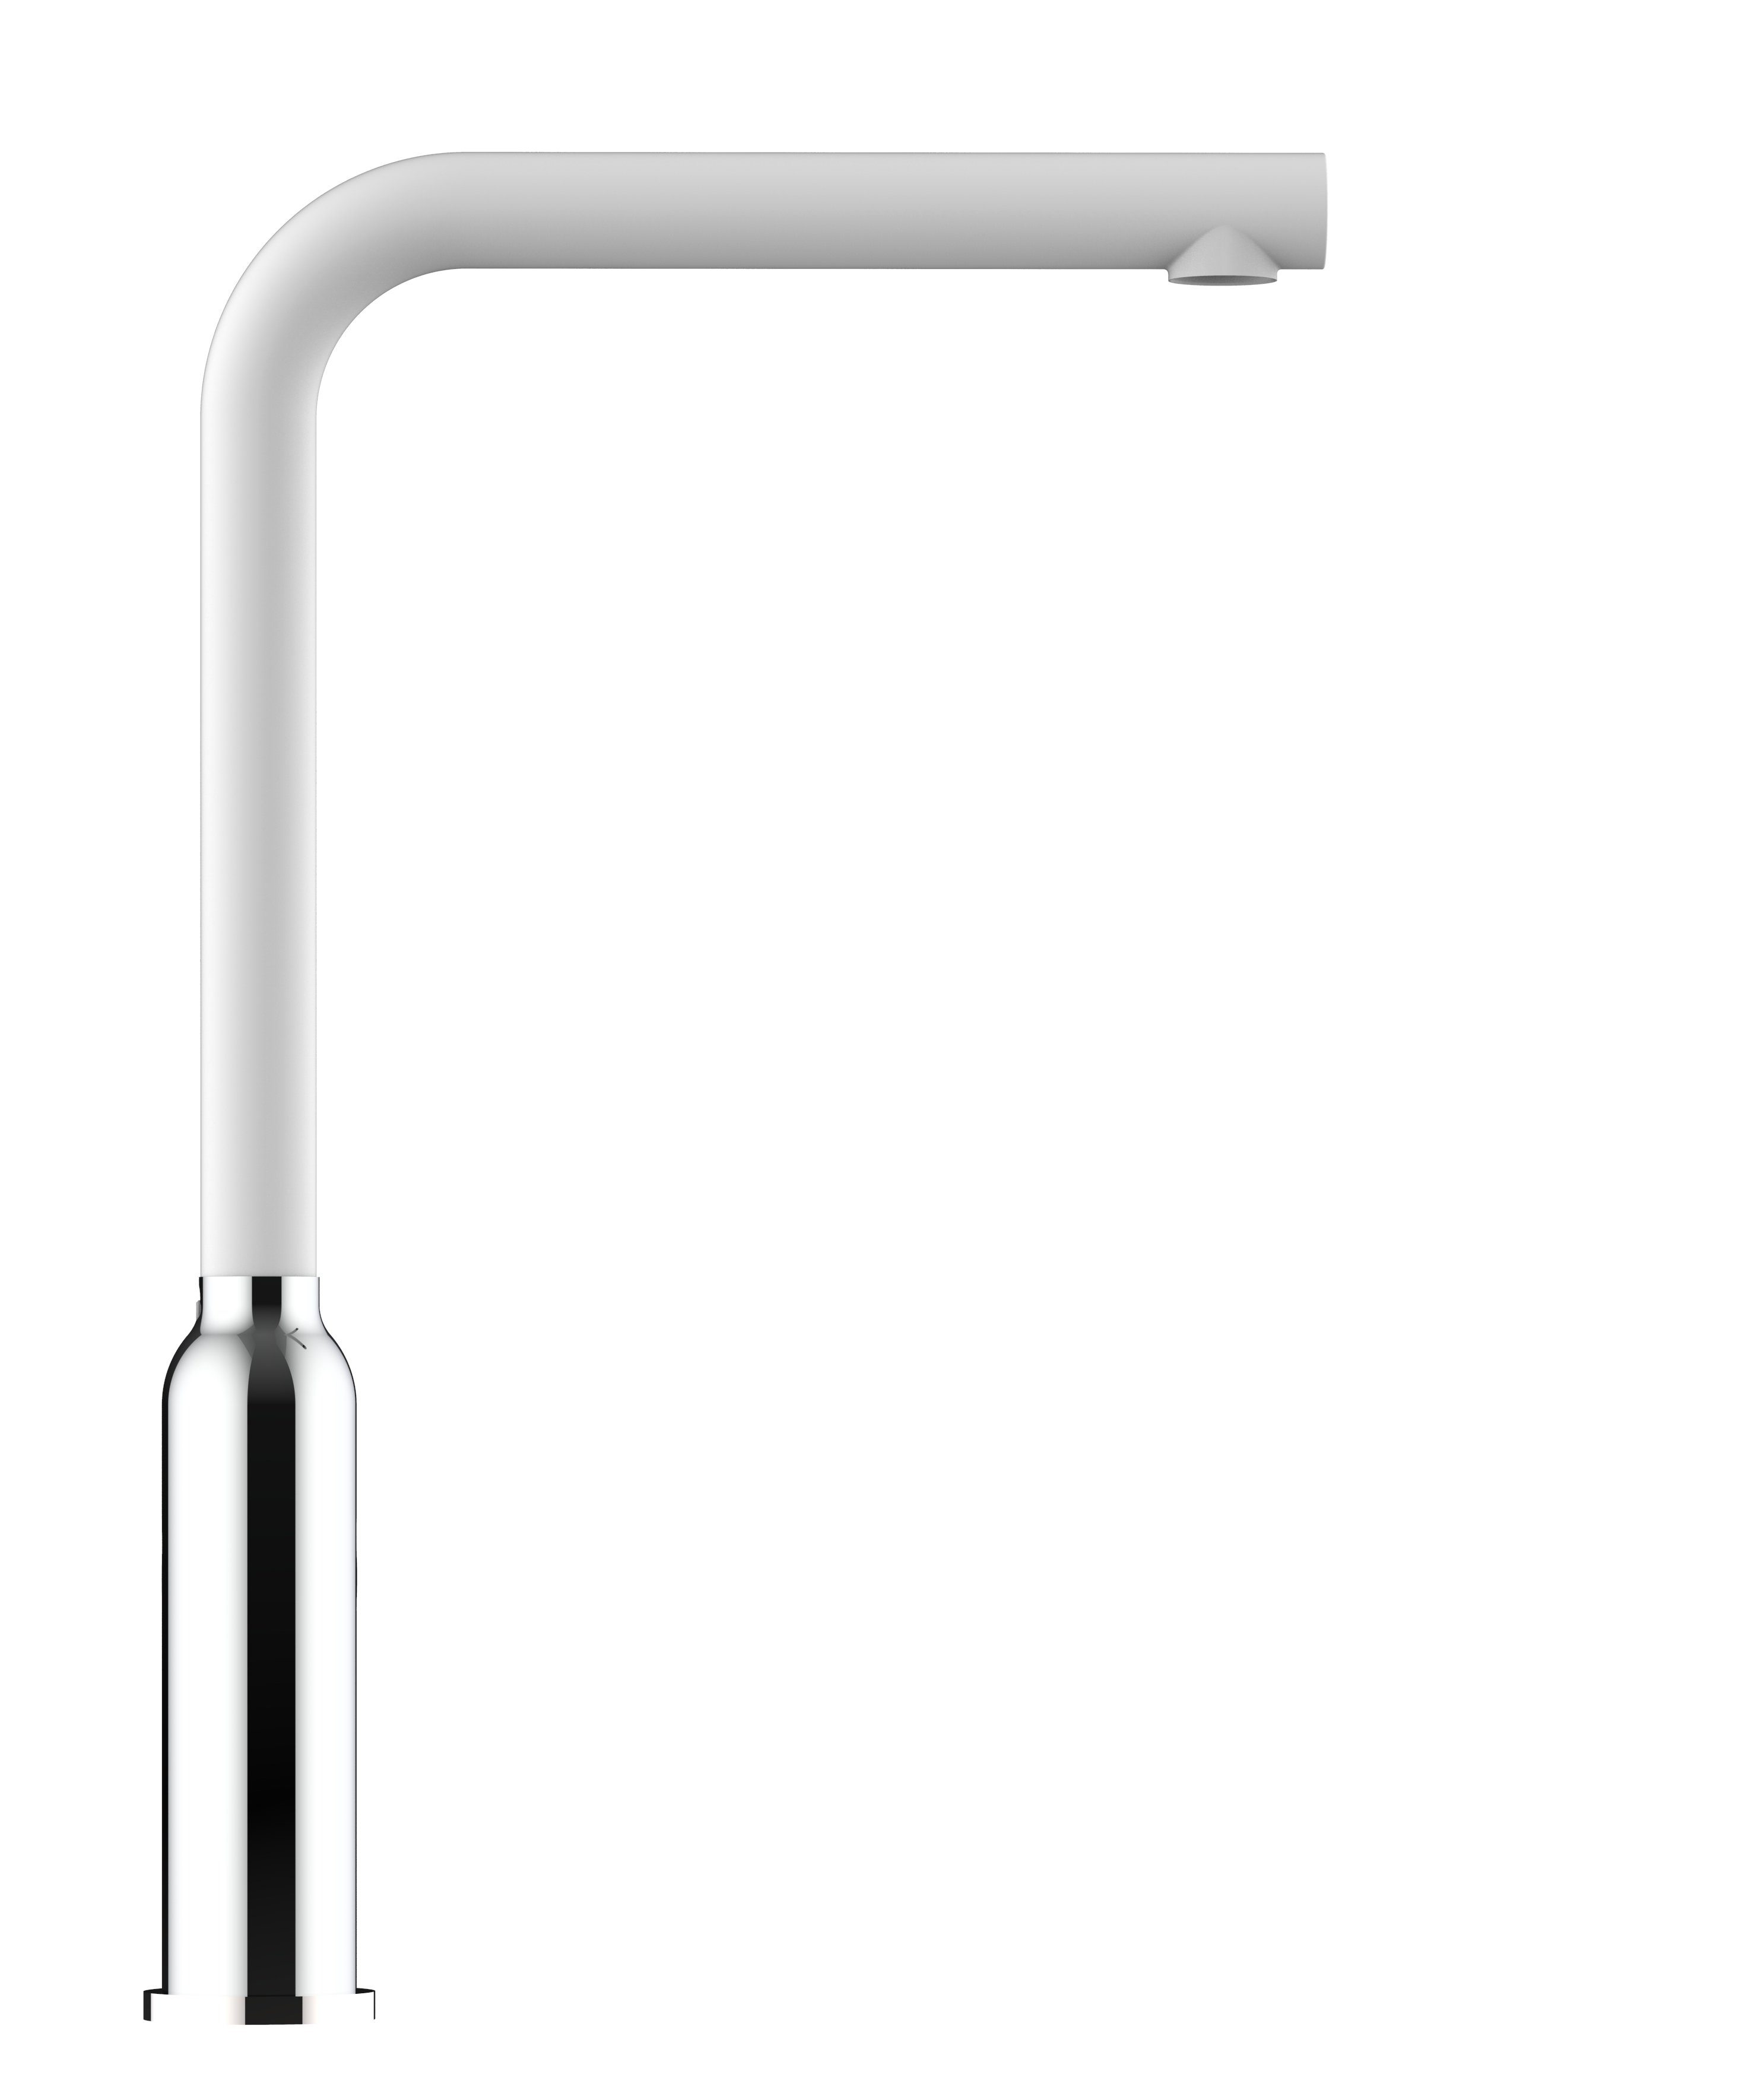 / Küchenarmatur Hochwertige Küchenarmatur VIZIO Wasserhahn mit Weiß Hochdruck, chrom 360° Granit Design schwenkbarem Verchromung Auslauf Chrom